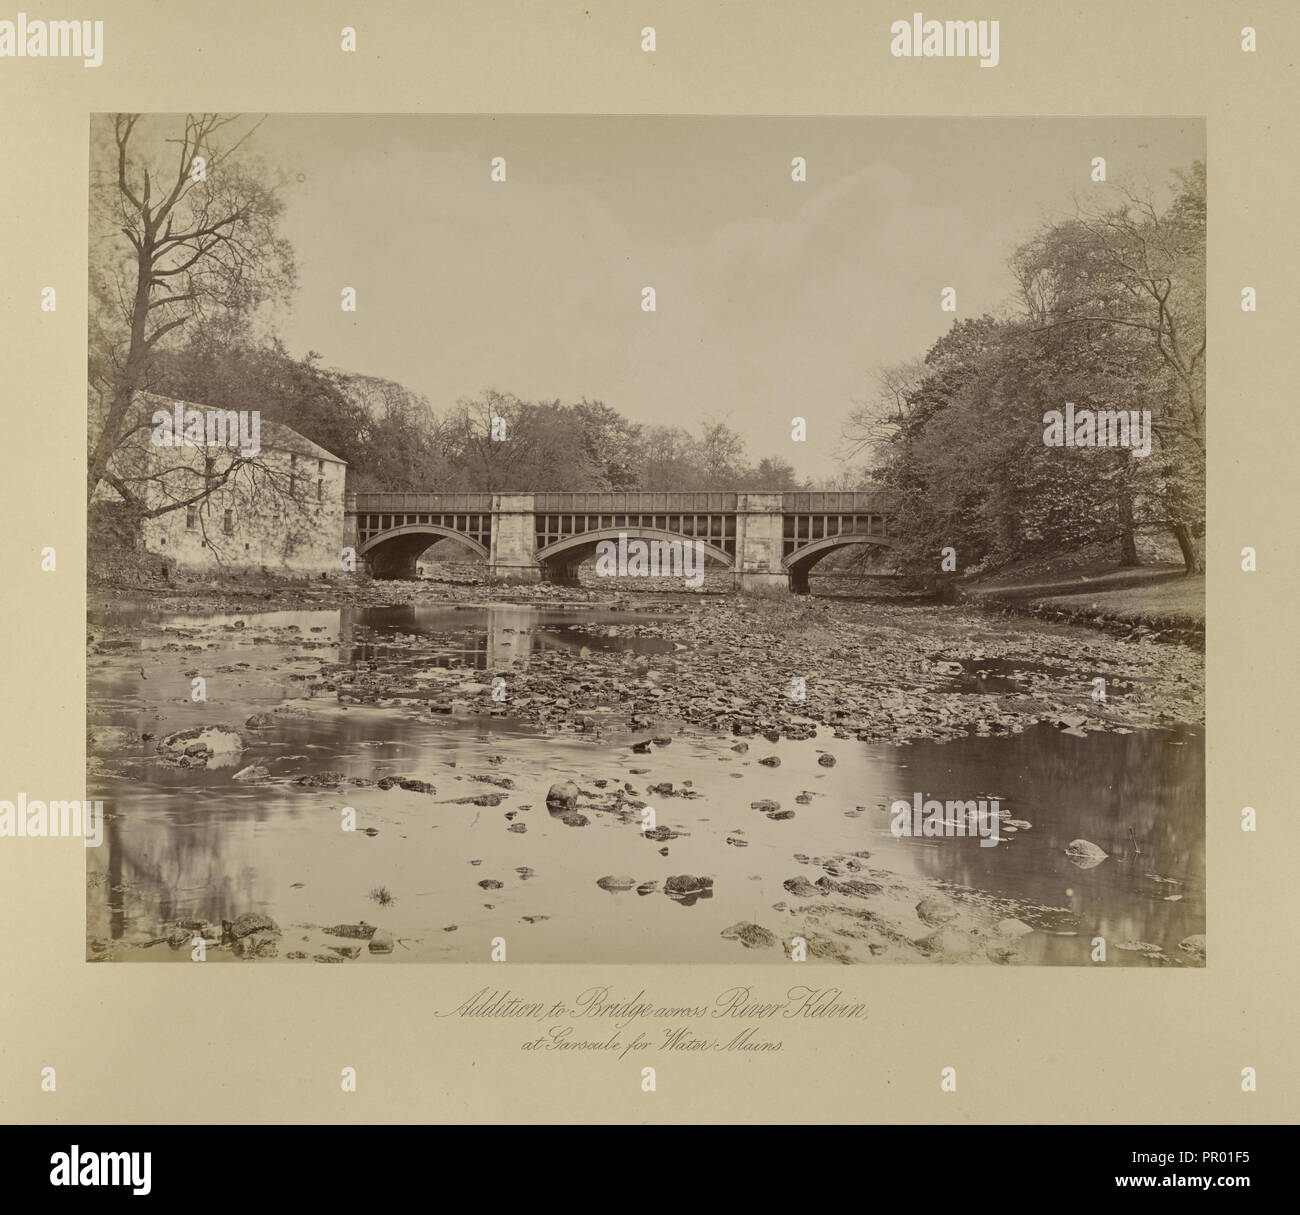 Addition to Bridge across River Kelvin; Thomas Annan, Scottish,1829 - 1887, Glasgow, Scotland; 1877; Albumen silver print Stock Photo